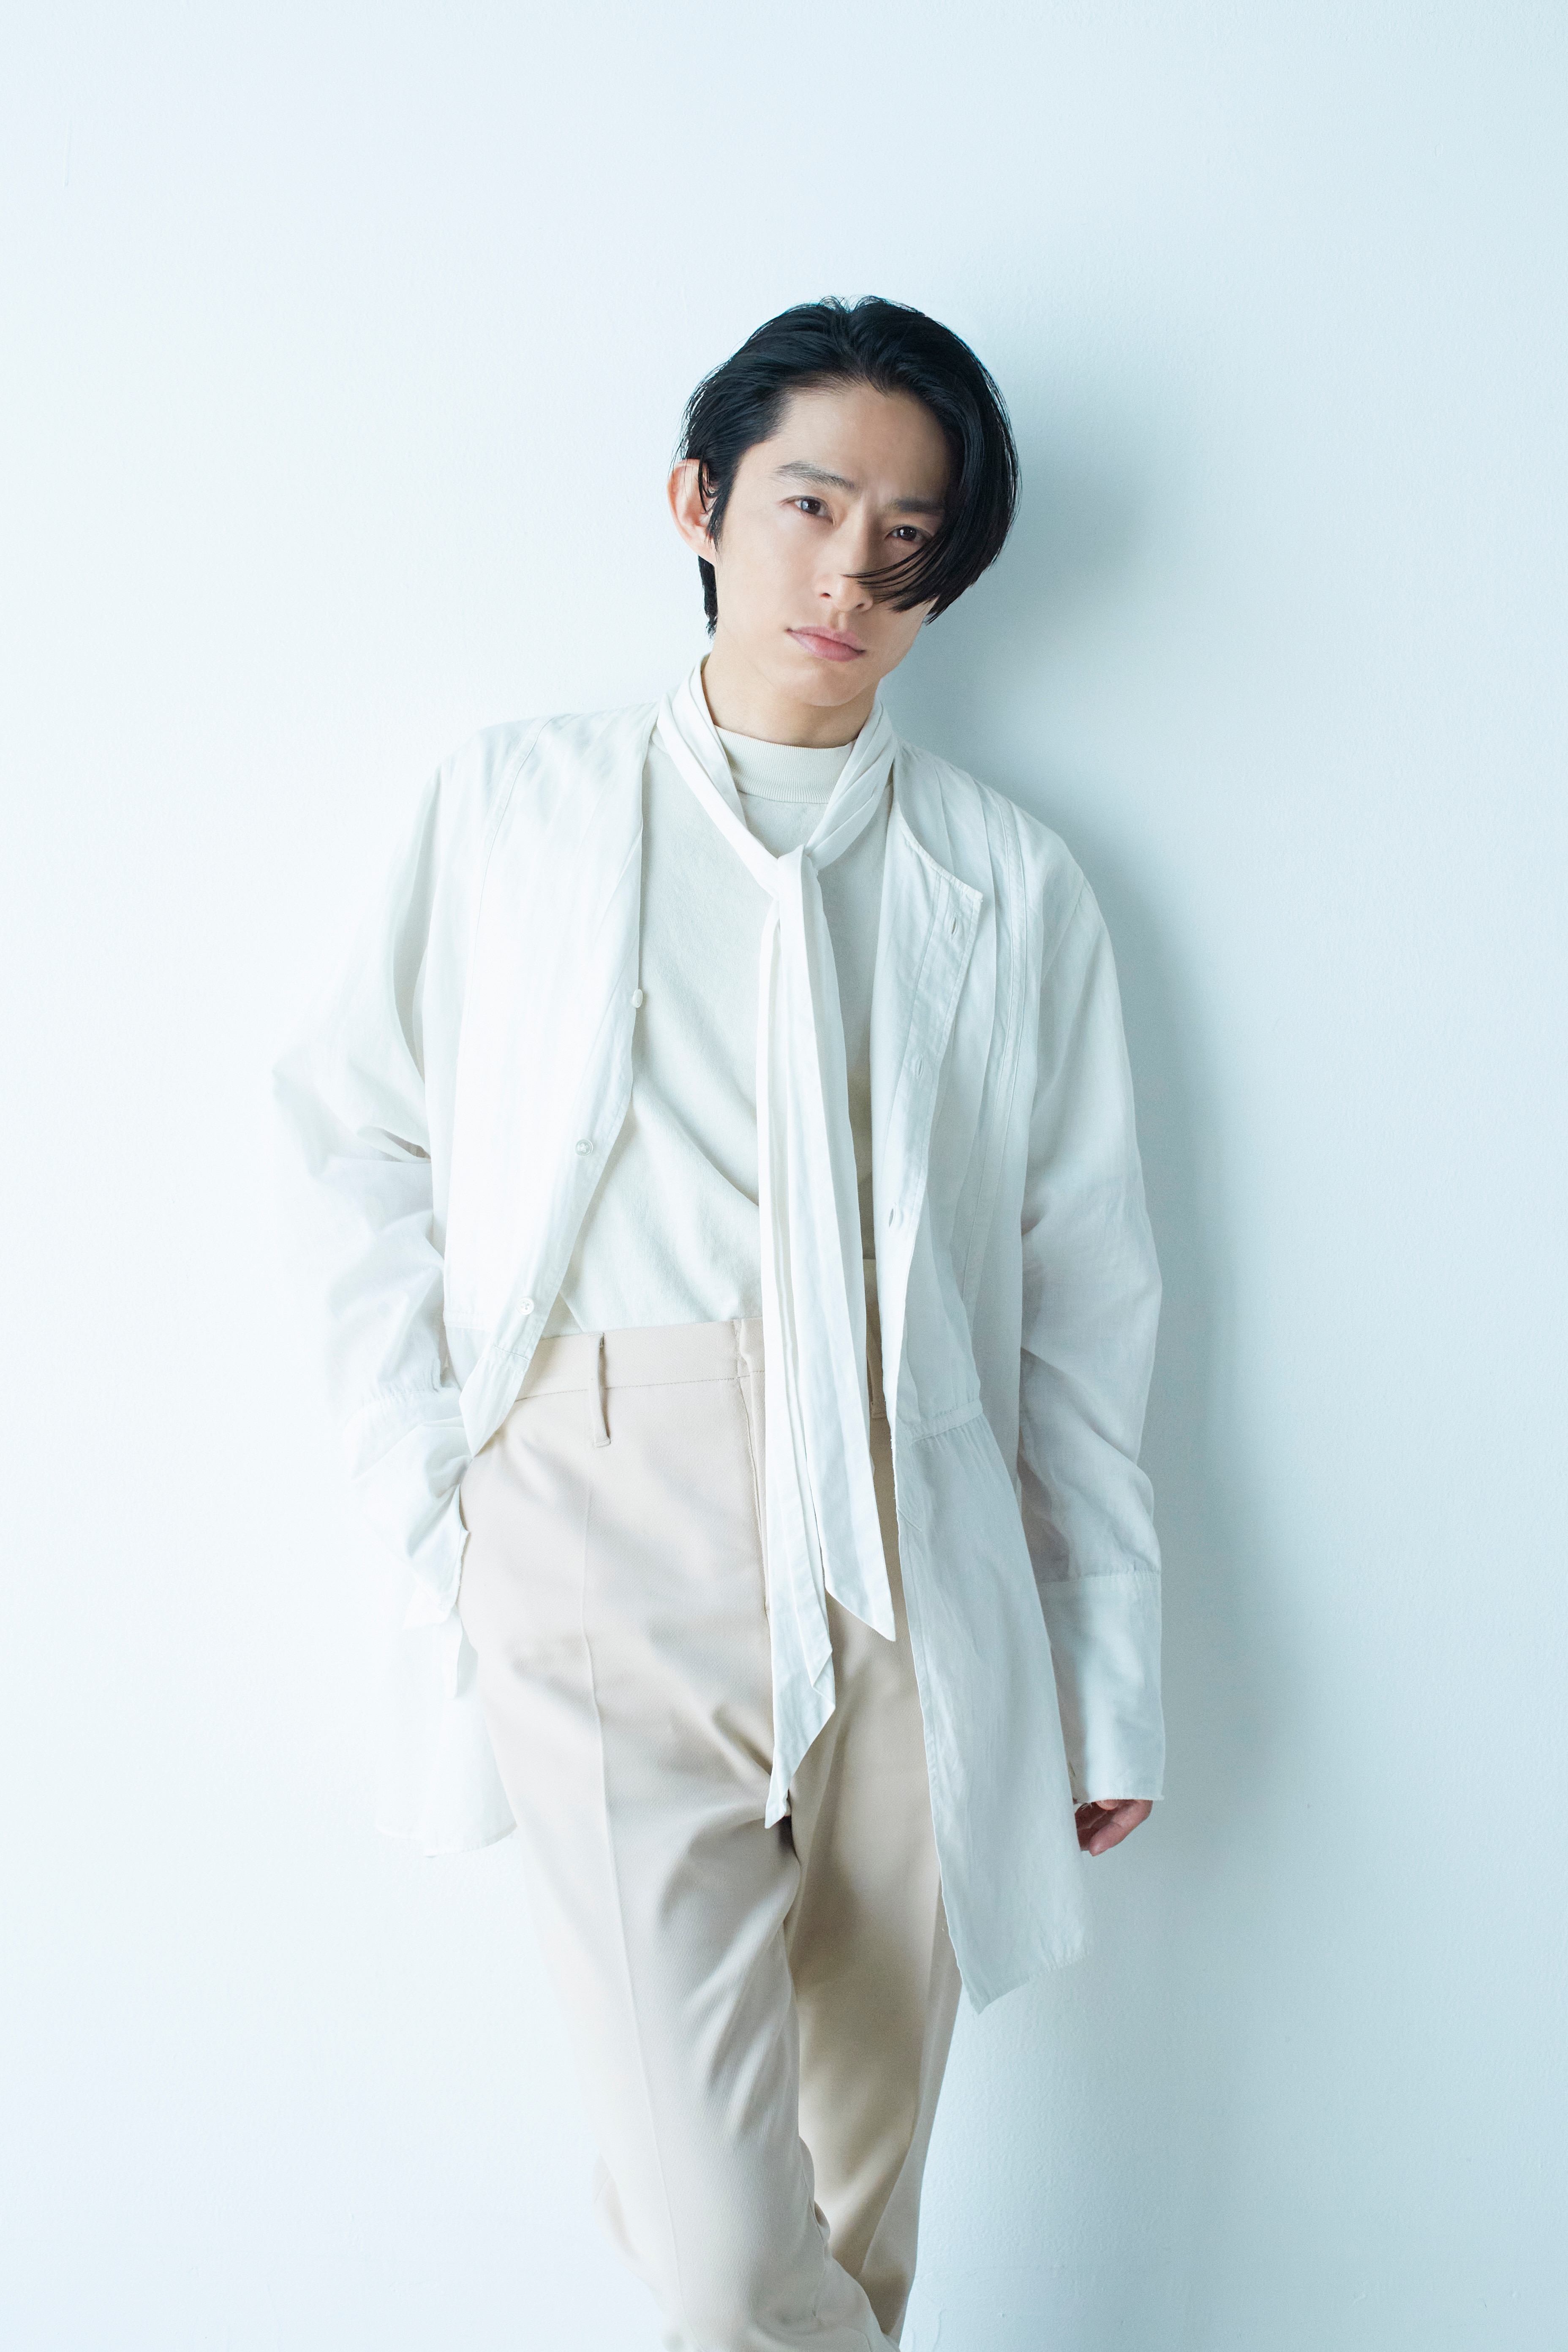 三宅健 Profile V6 Official Website